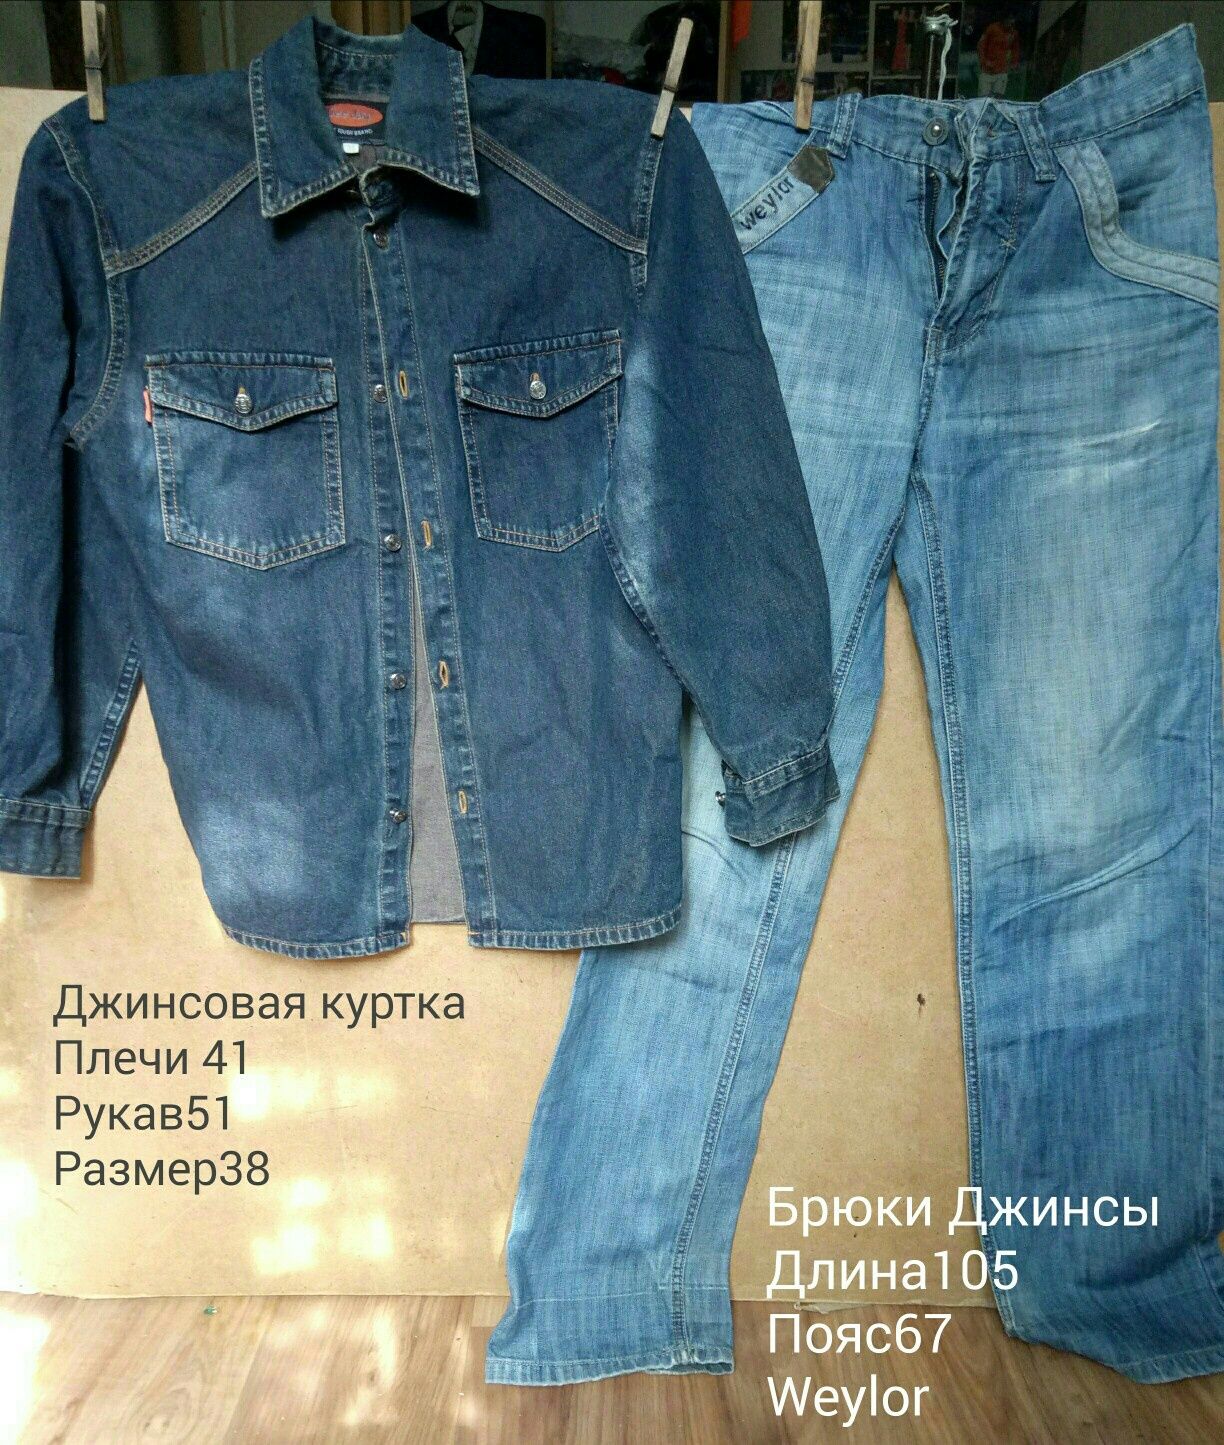 Костюмы тройки,рубашки,джинсы,курточки на 12-15 лет,размеры  на фото.